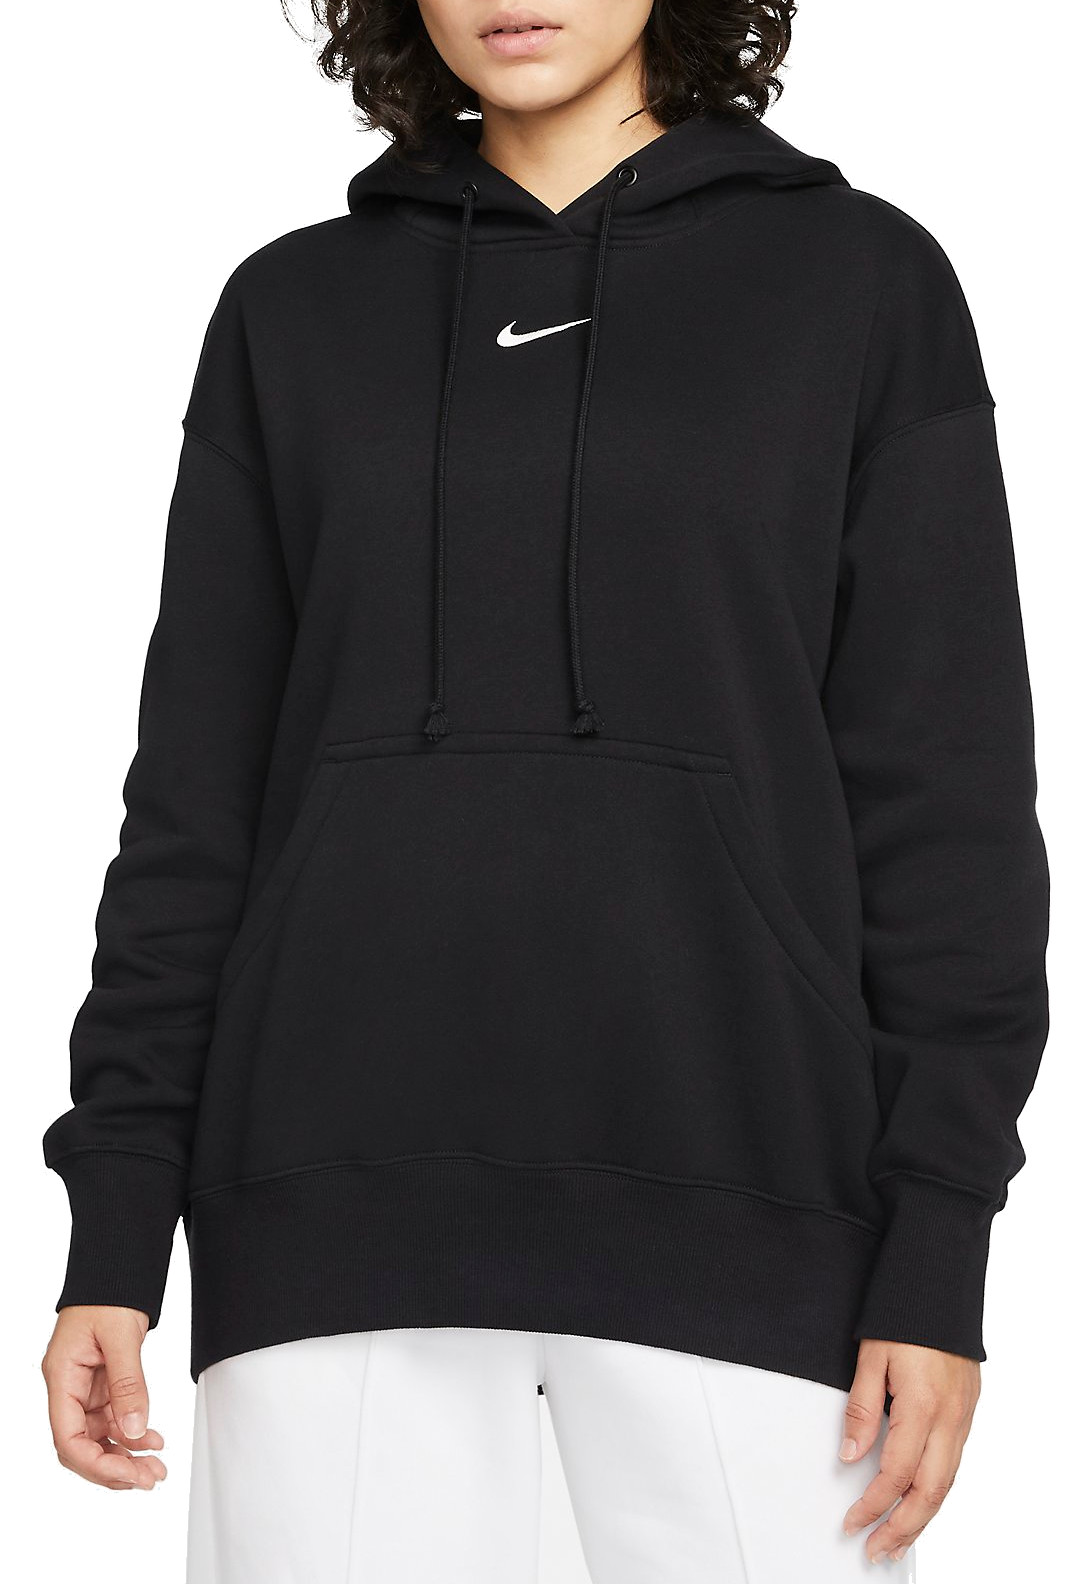 Hooded sweatshirt Nike Sportswear Phoenix Fleece